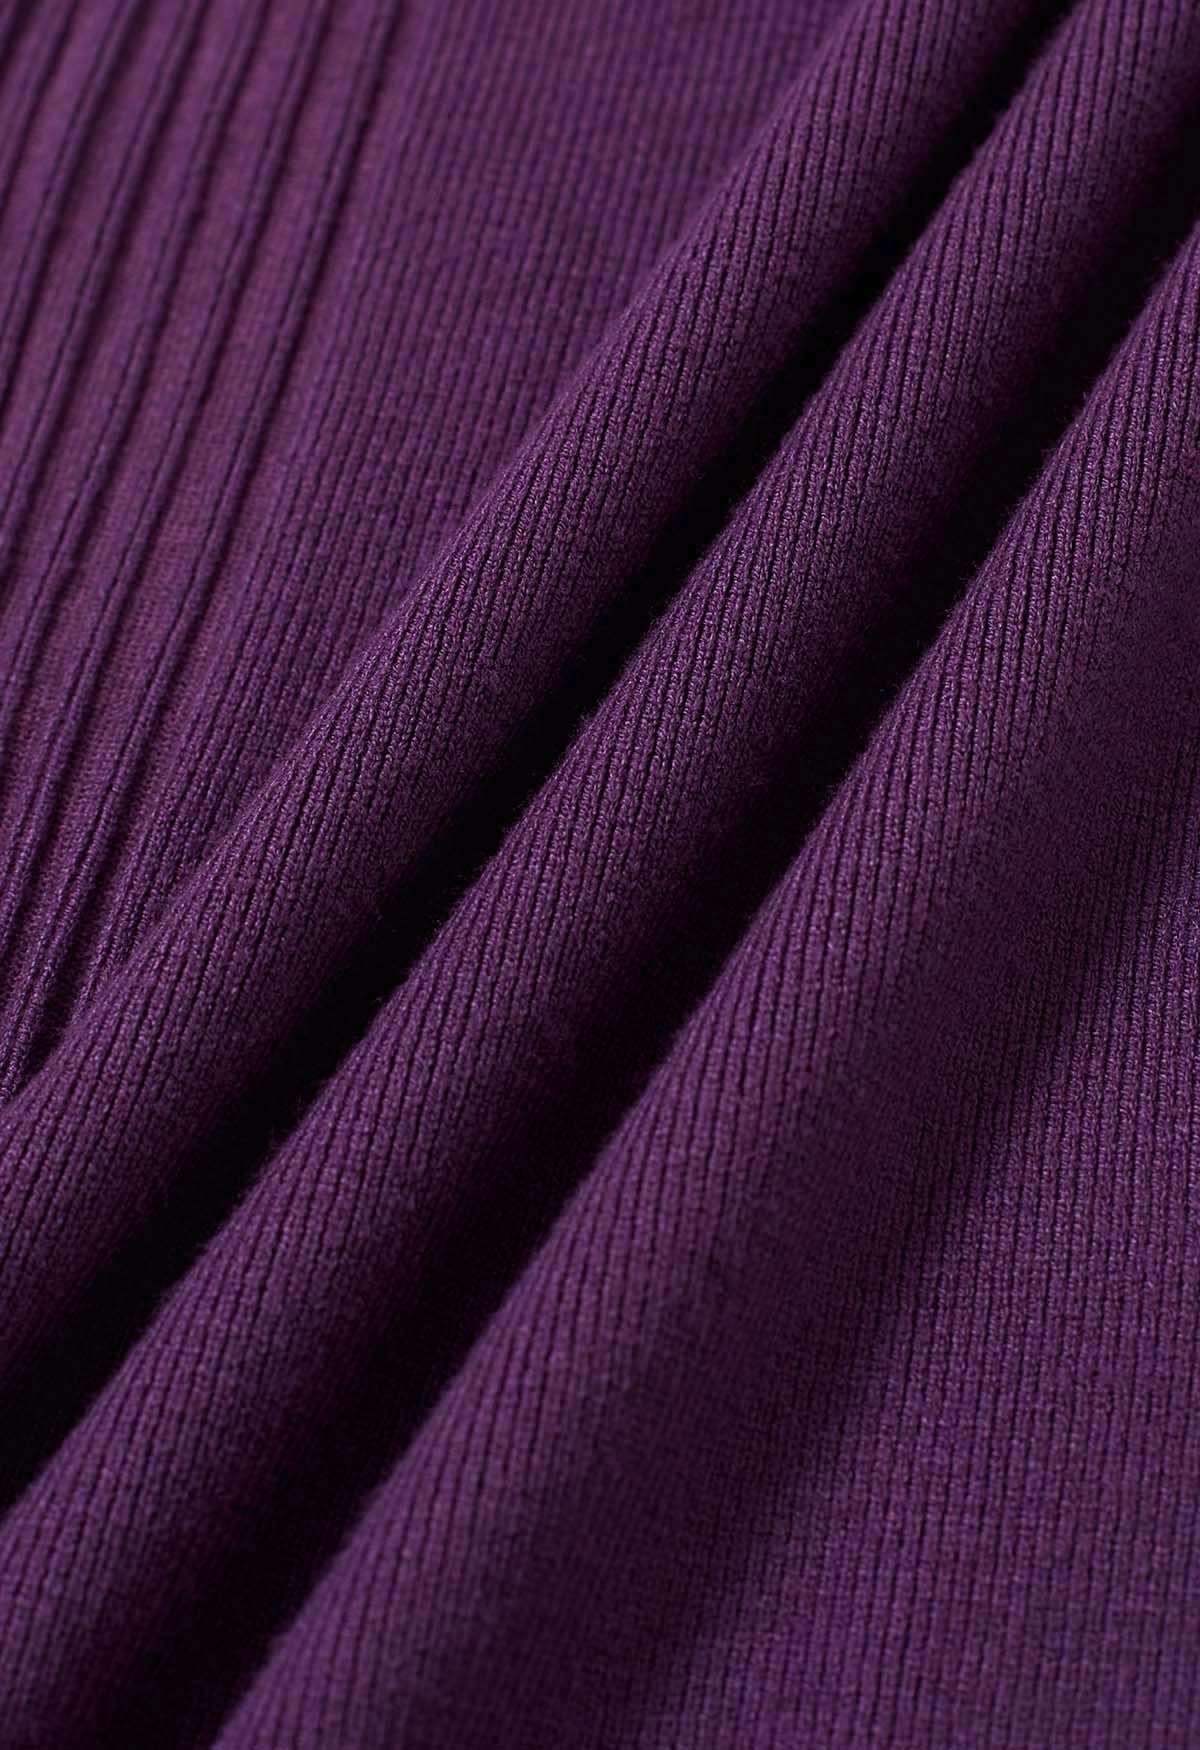 Pantalon en tricot côtelé avec cordon de serrage à la taille, violet